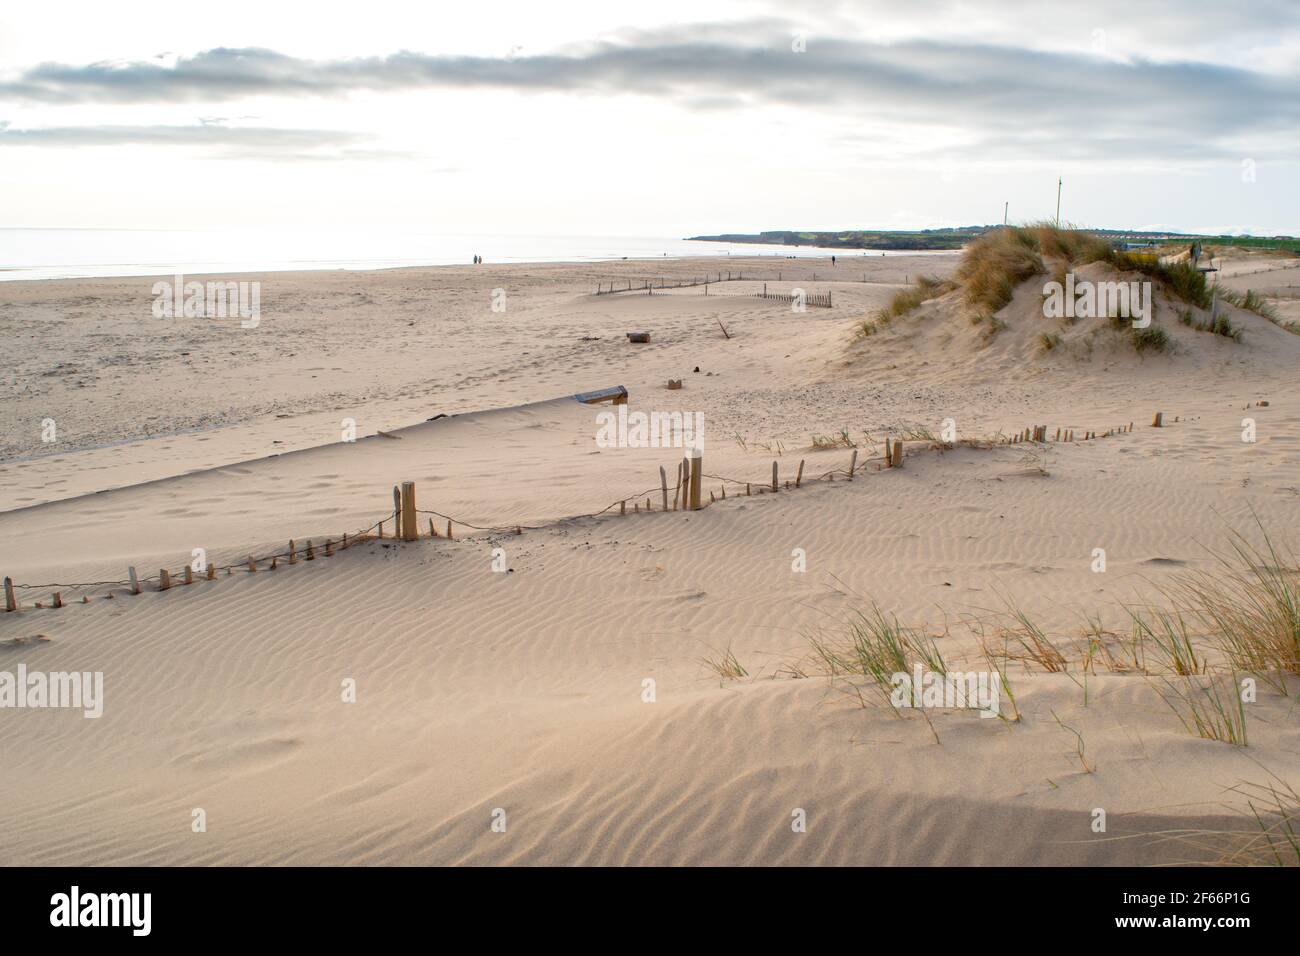 La costa sabbiosa di South Shields Beach, una cittadina balneare vicino a Newcastle upon Tyne, nel nord-est dell'Inghilterra. Foto Stock